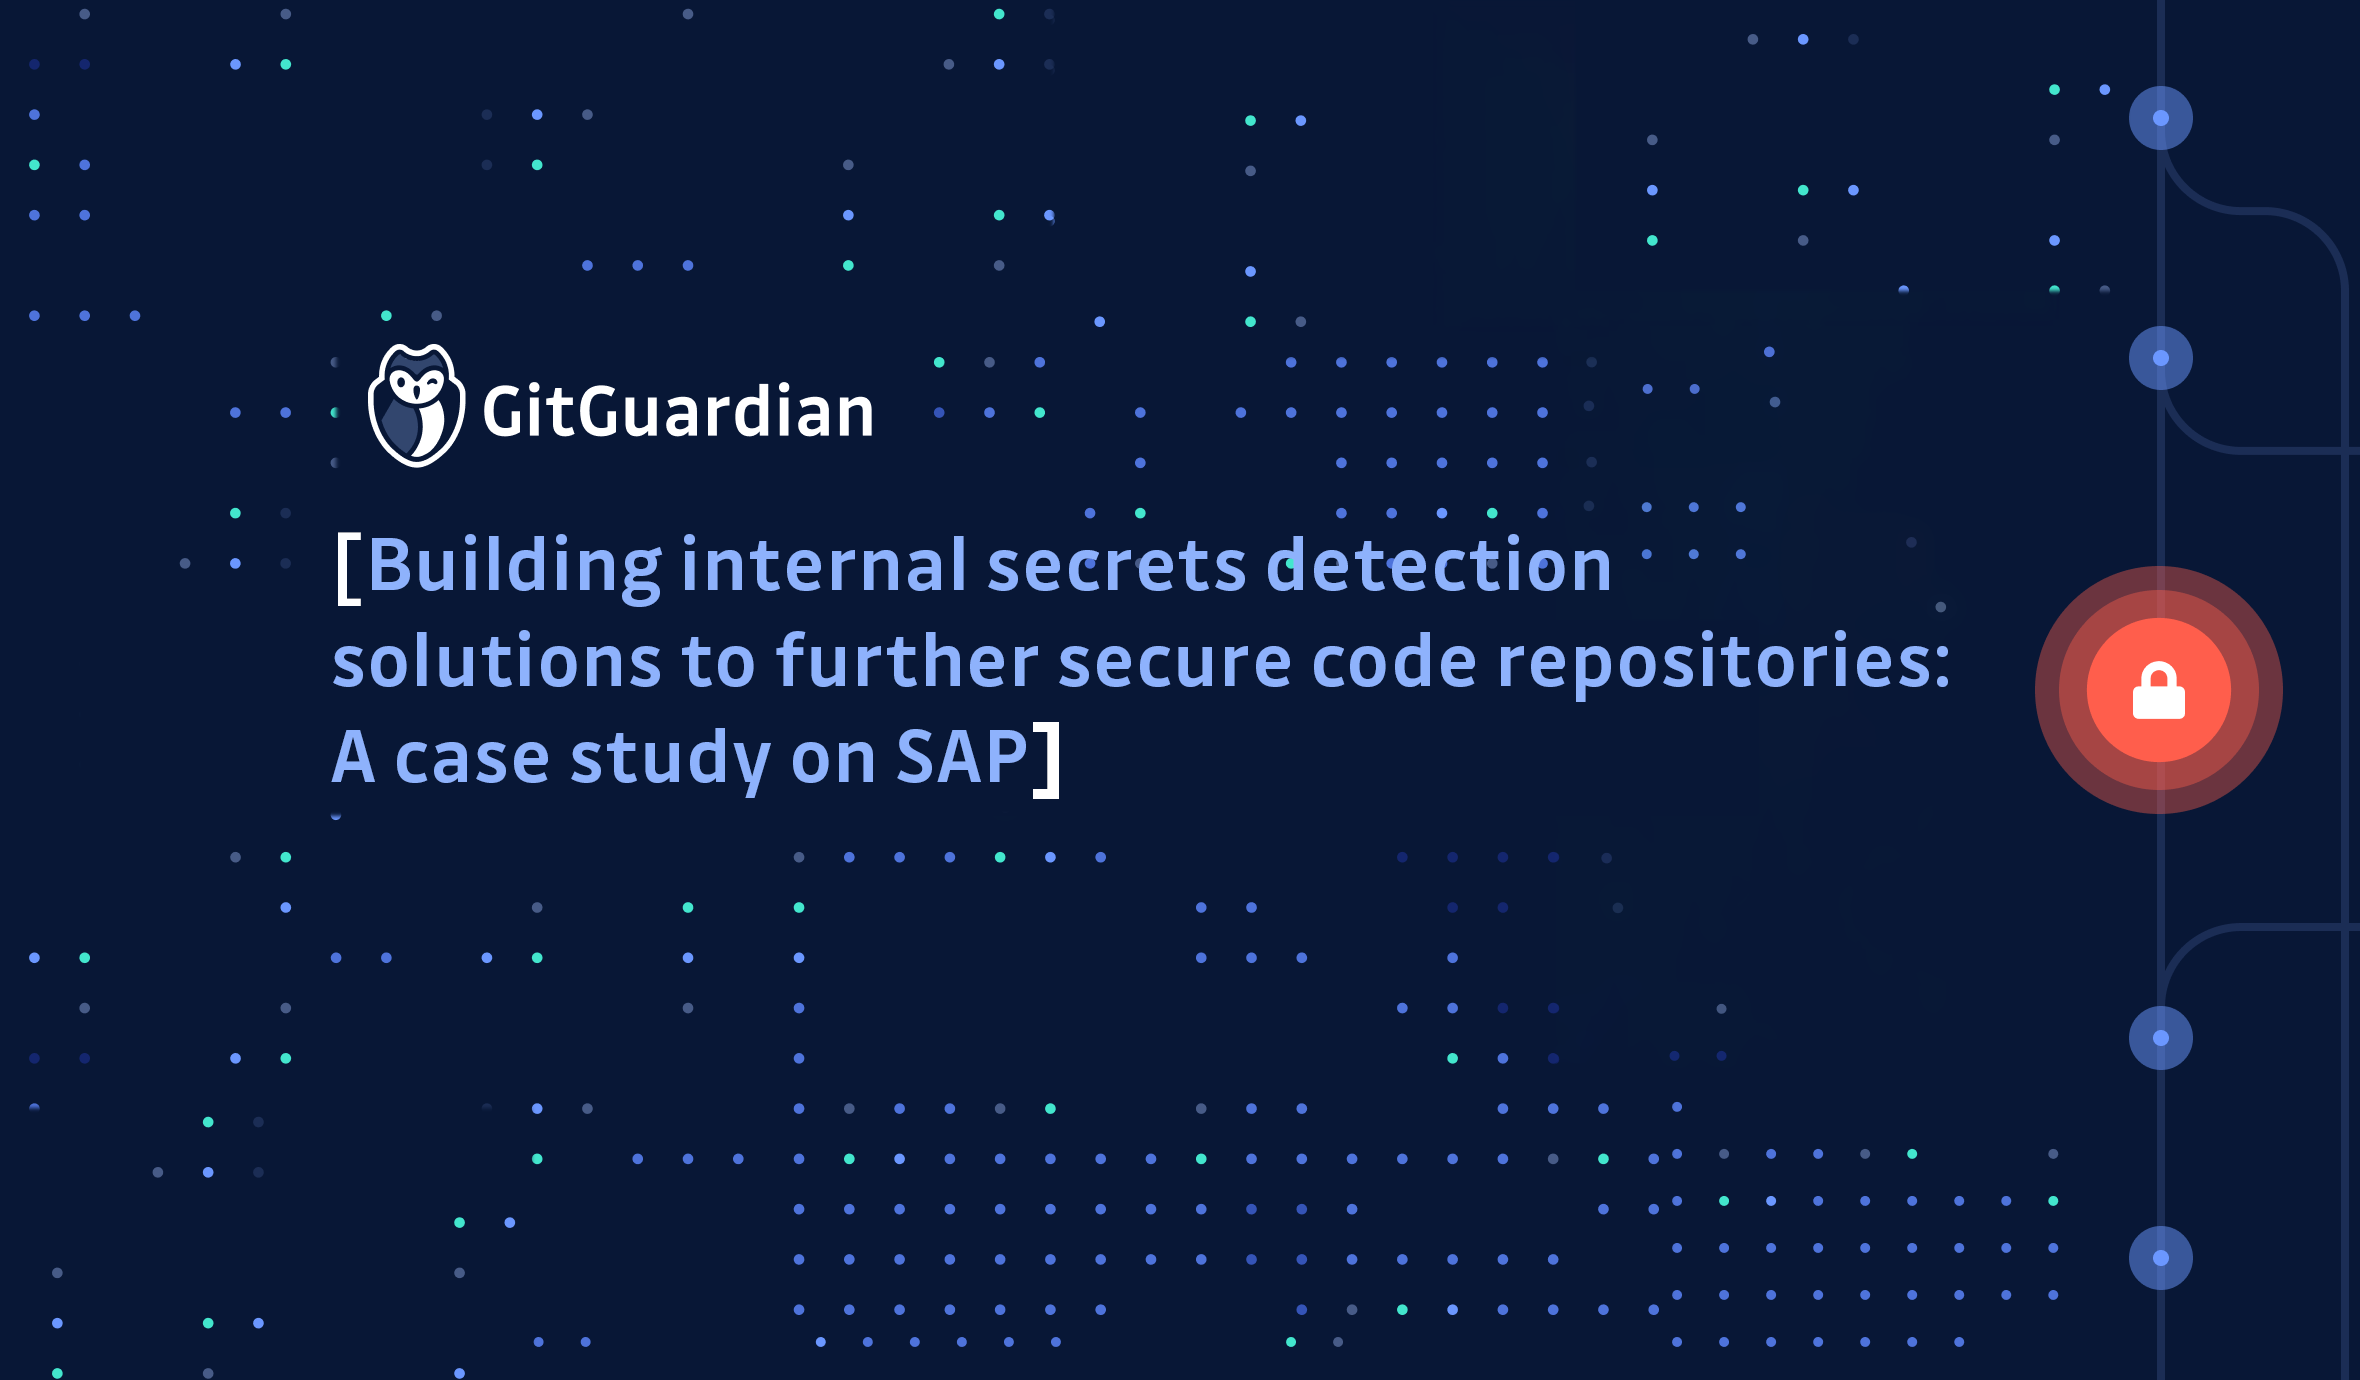 Building internal secrets detection solutions: a case study about how SAP scans git repos for secrets